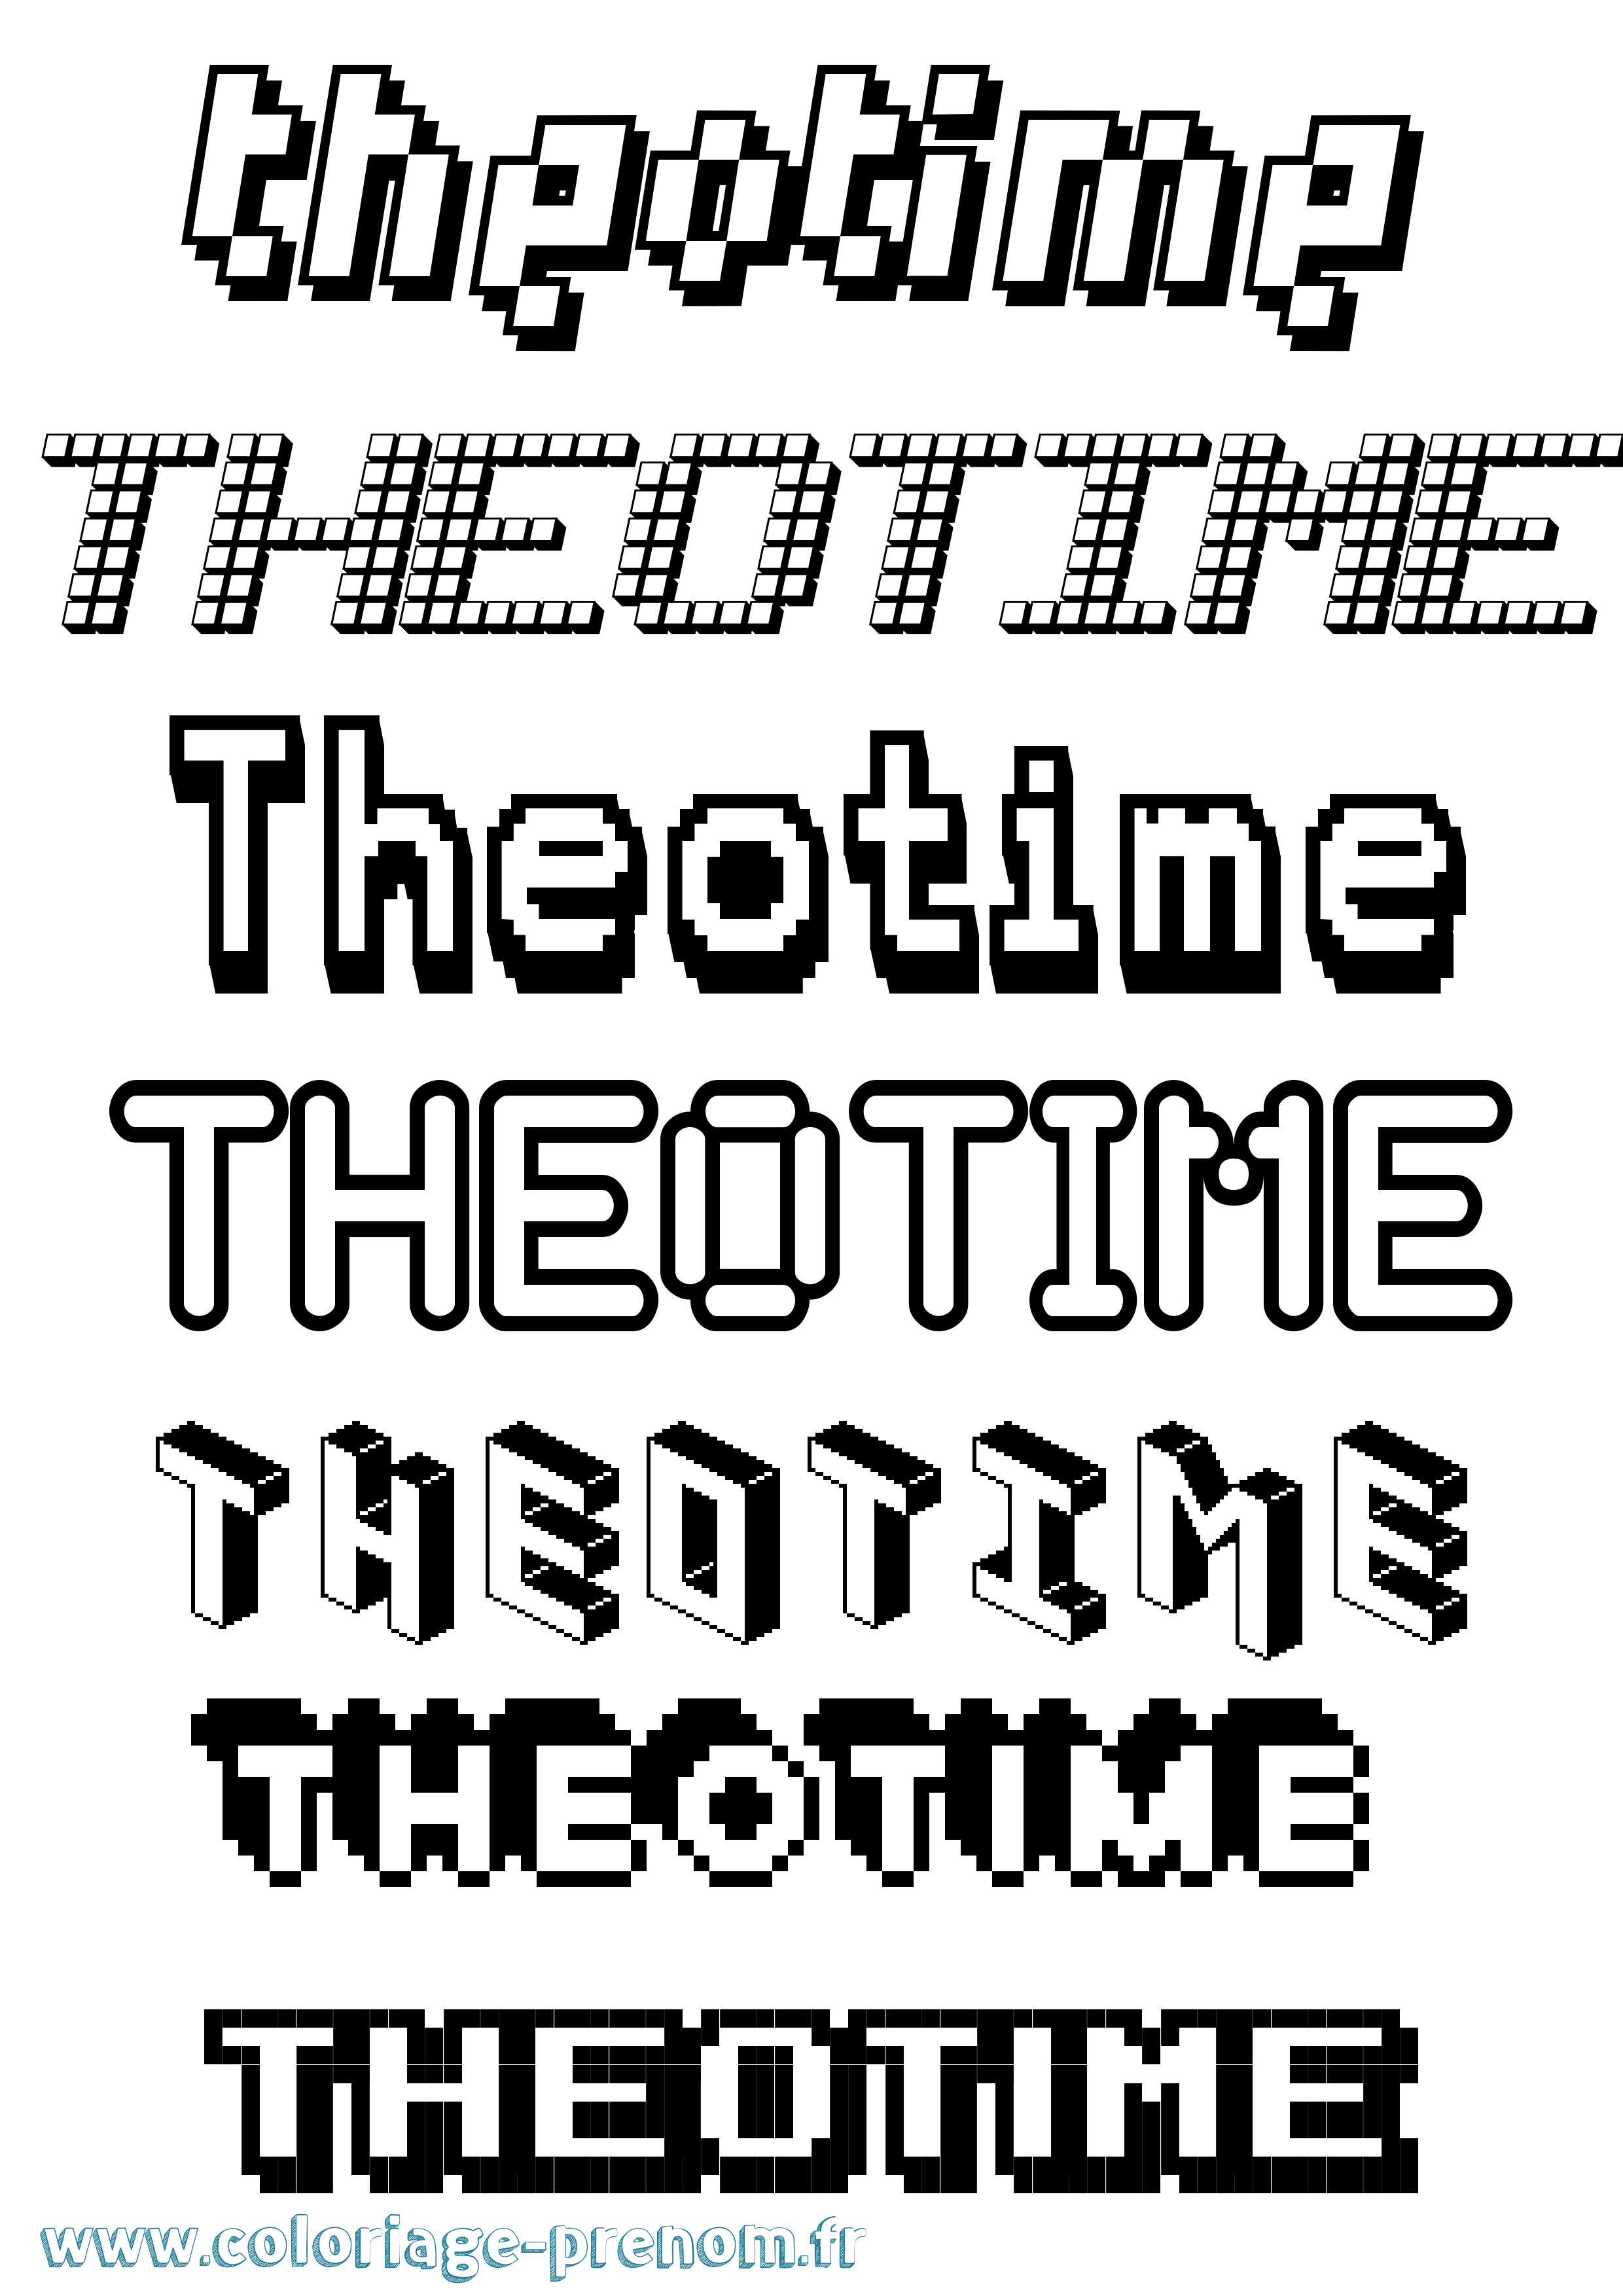 Coloriage prénom Theotime Pixel